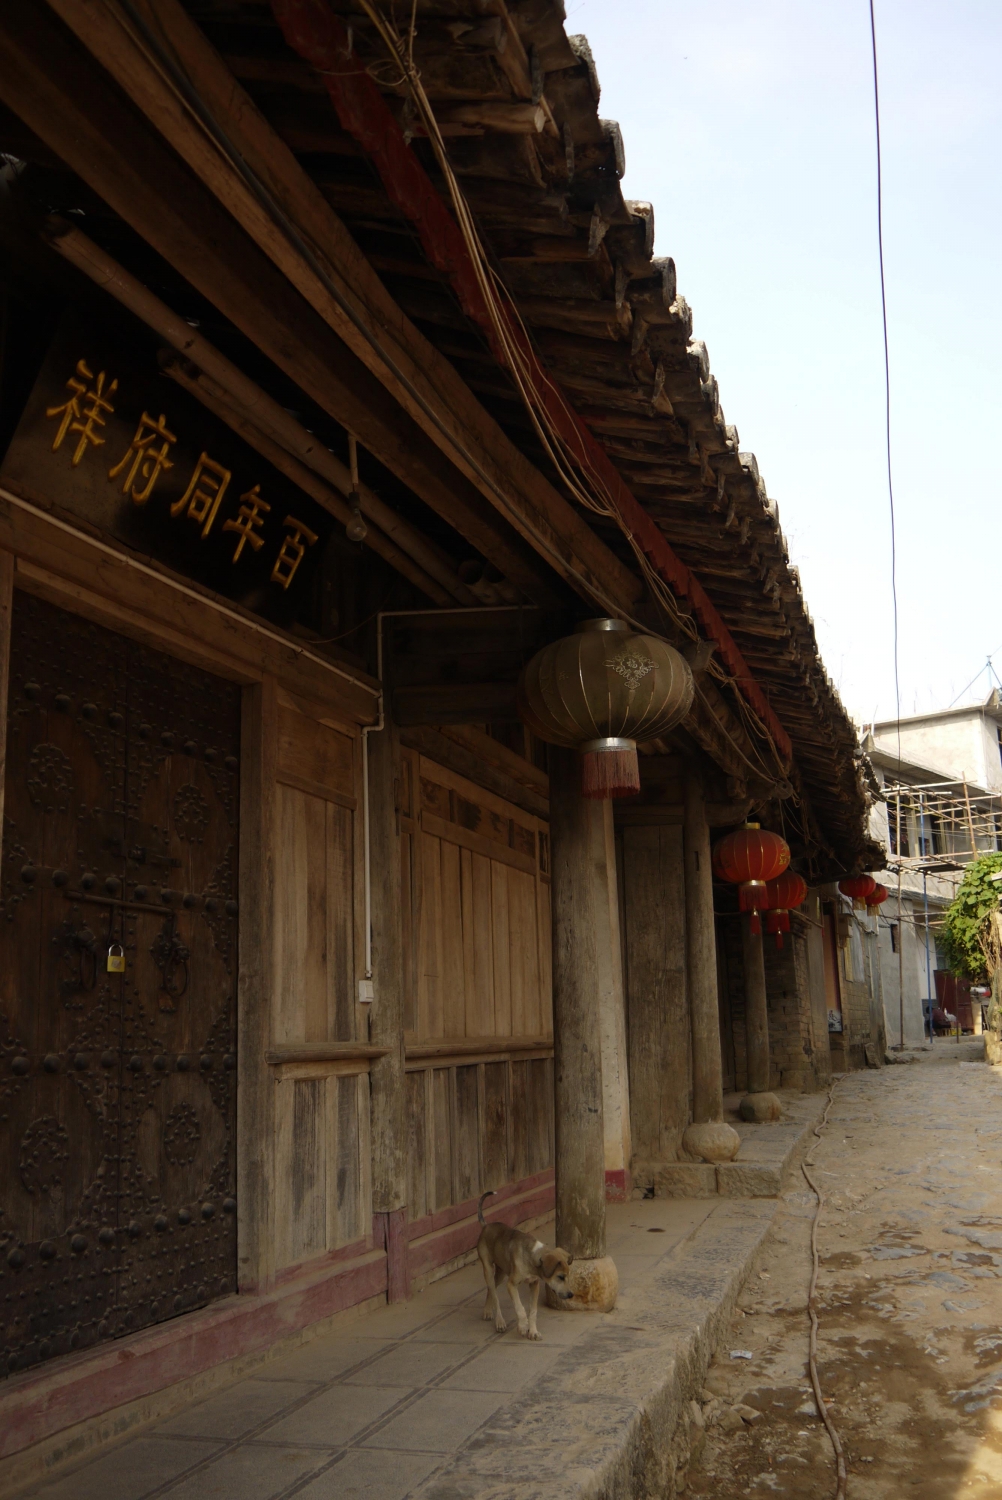 Beautiful traditional Yiwu architecture